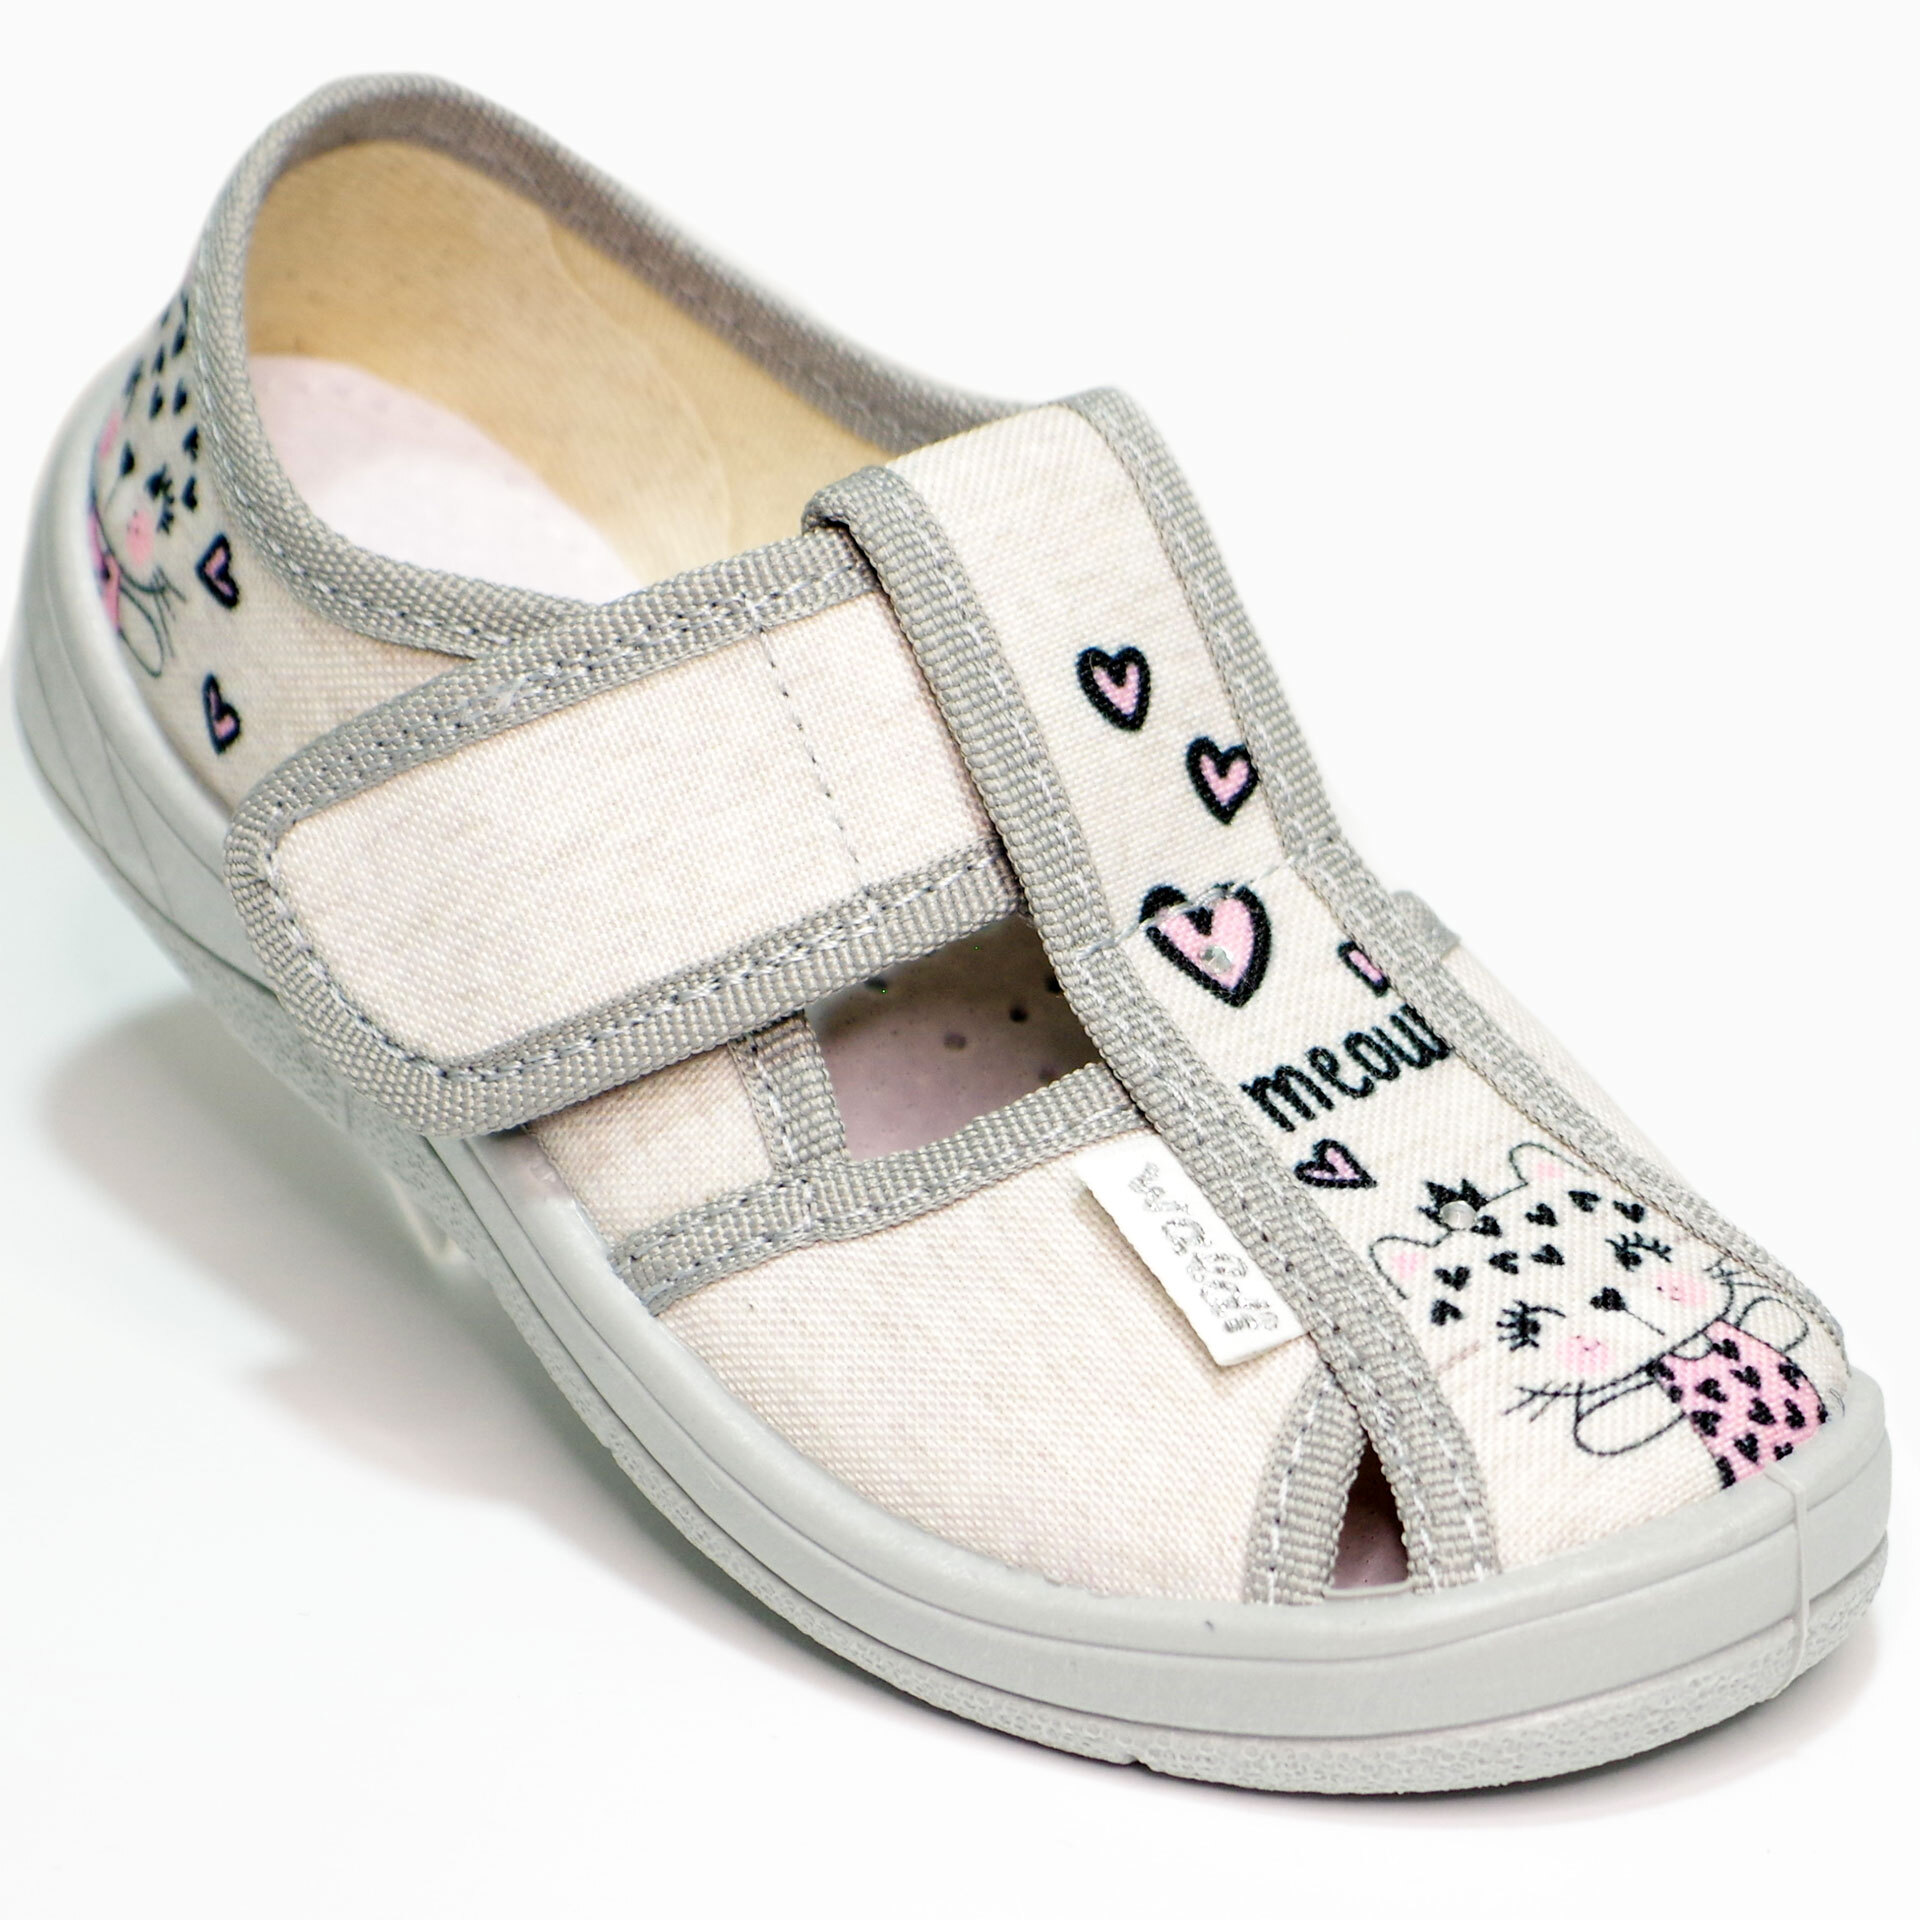 Текстильная обувь для девочек Тапочки Маша (2203) цвет Серый 24-30 размеры – Sole Kids